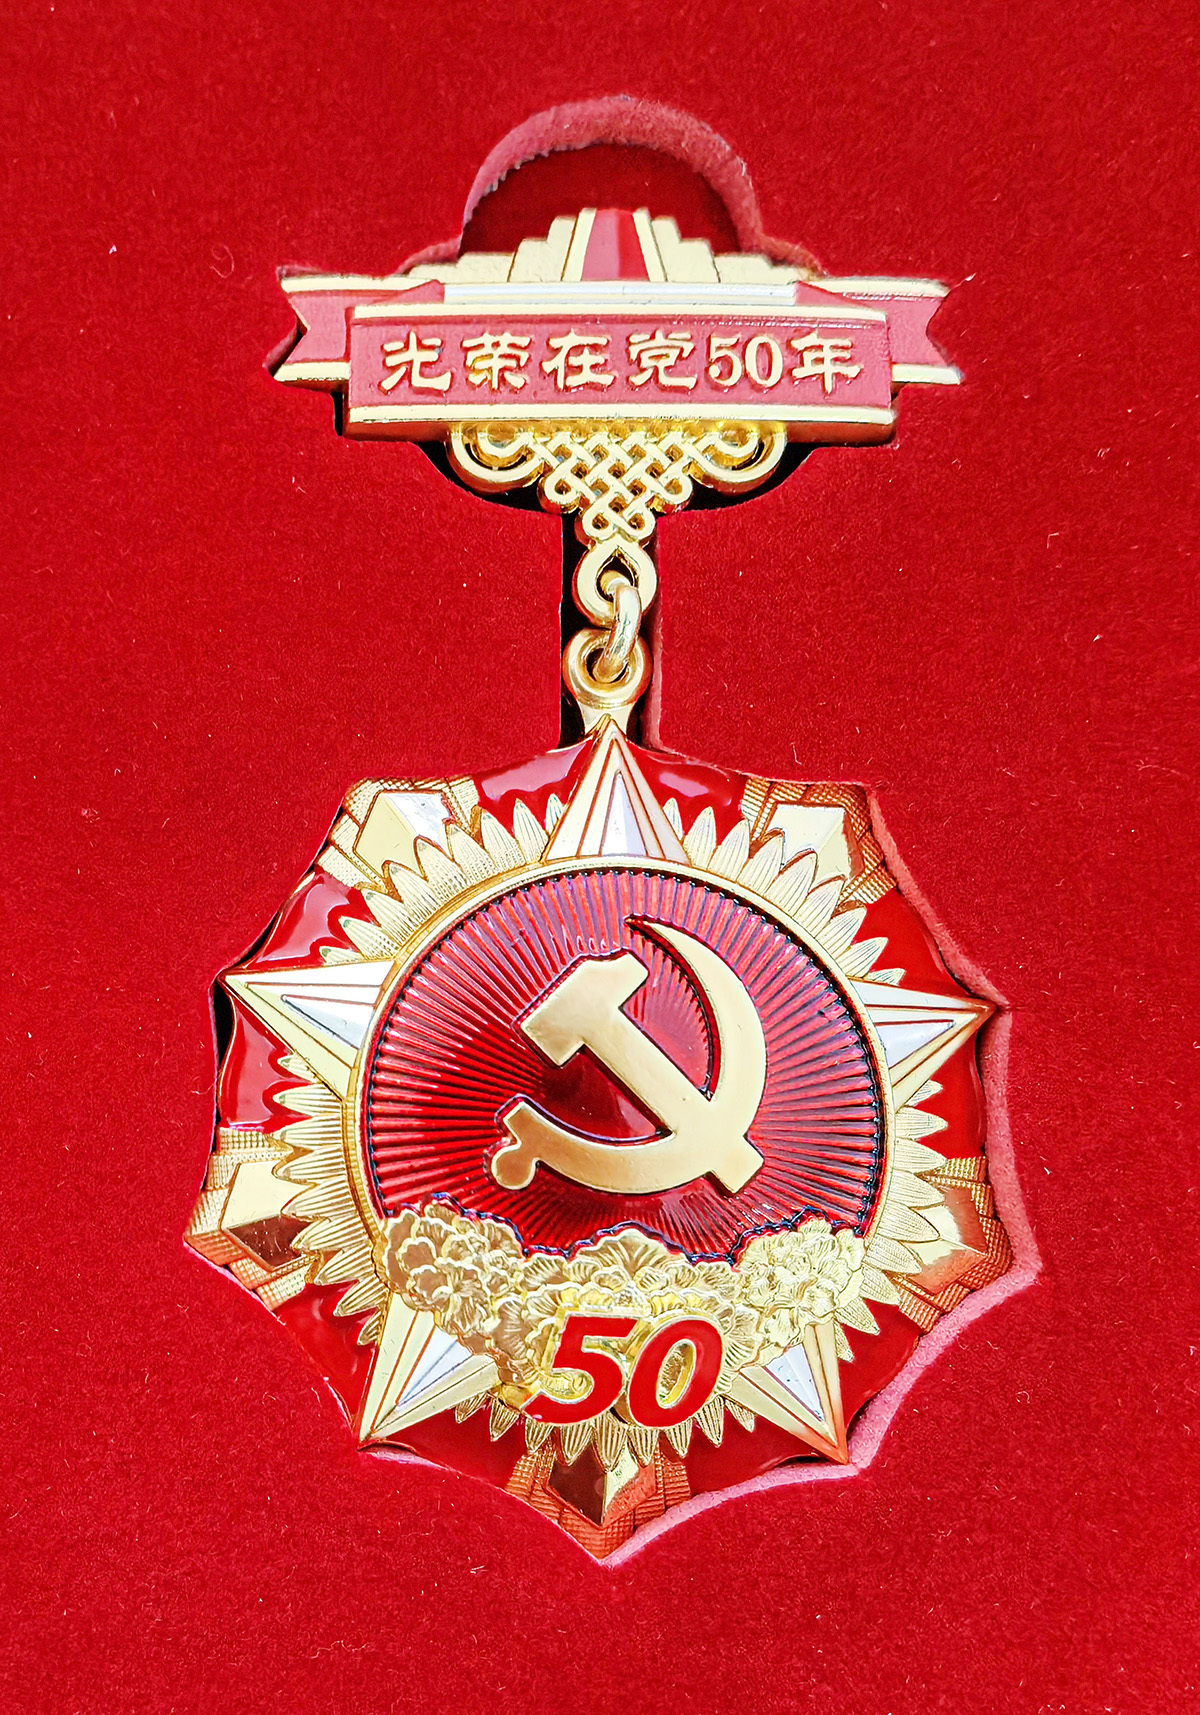 党建系列活动庆七一 ——光荣在党50年 纪念章上门颁发